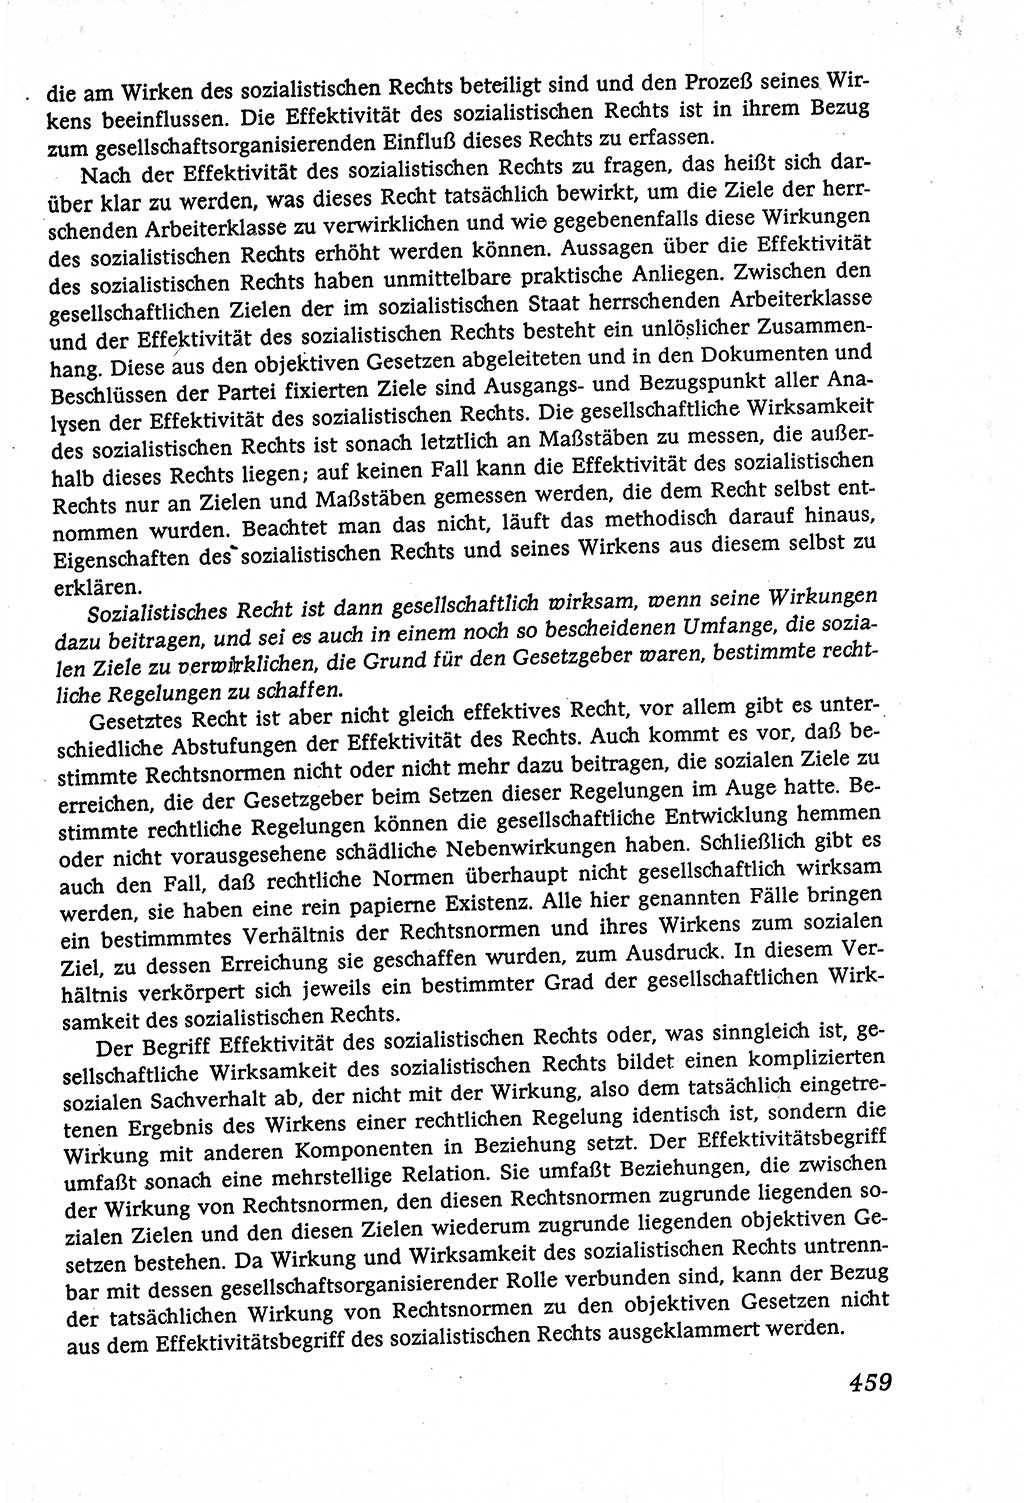 Marxistisch-leninistische (ML) Staats- und Rechtstheorie [Deutsche Demokratische Republik (DDR)], Lehrbuch 1980, Seite 459 (ML St.-R.-Th. DDR Lb. 1980, S. 459)